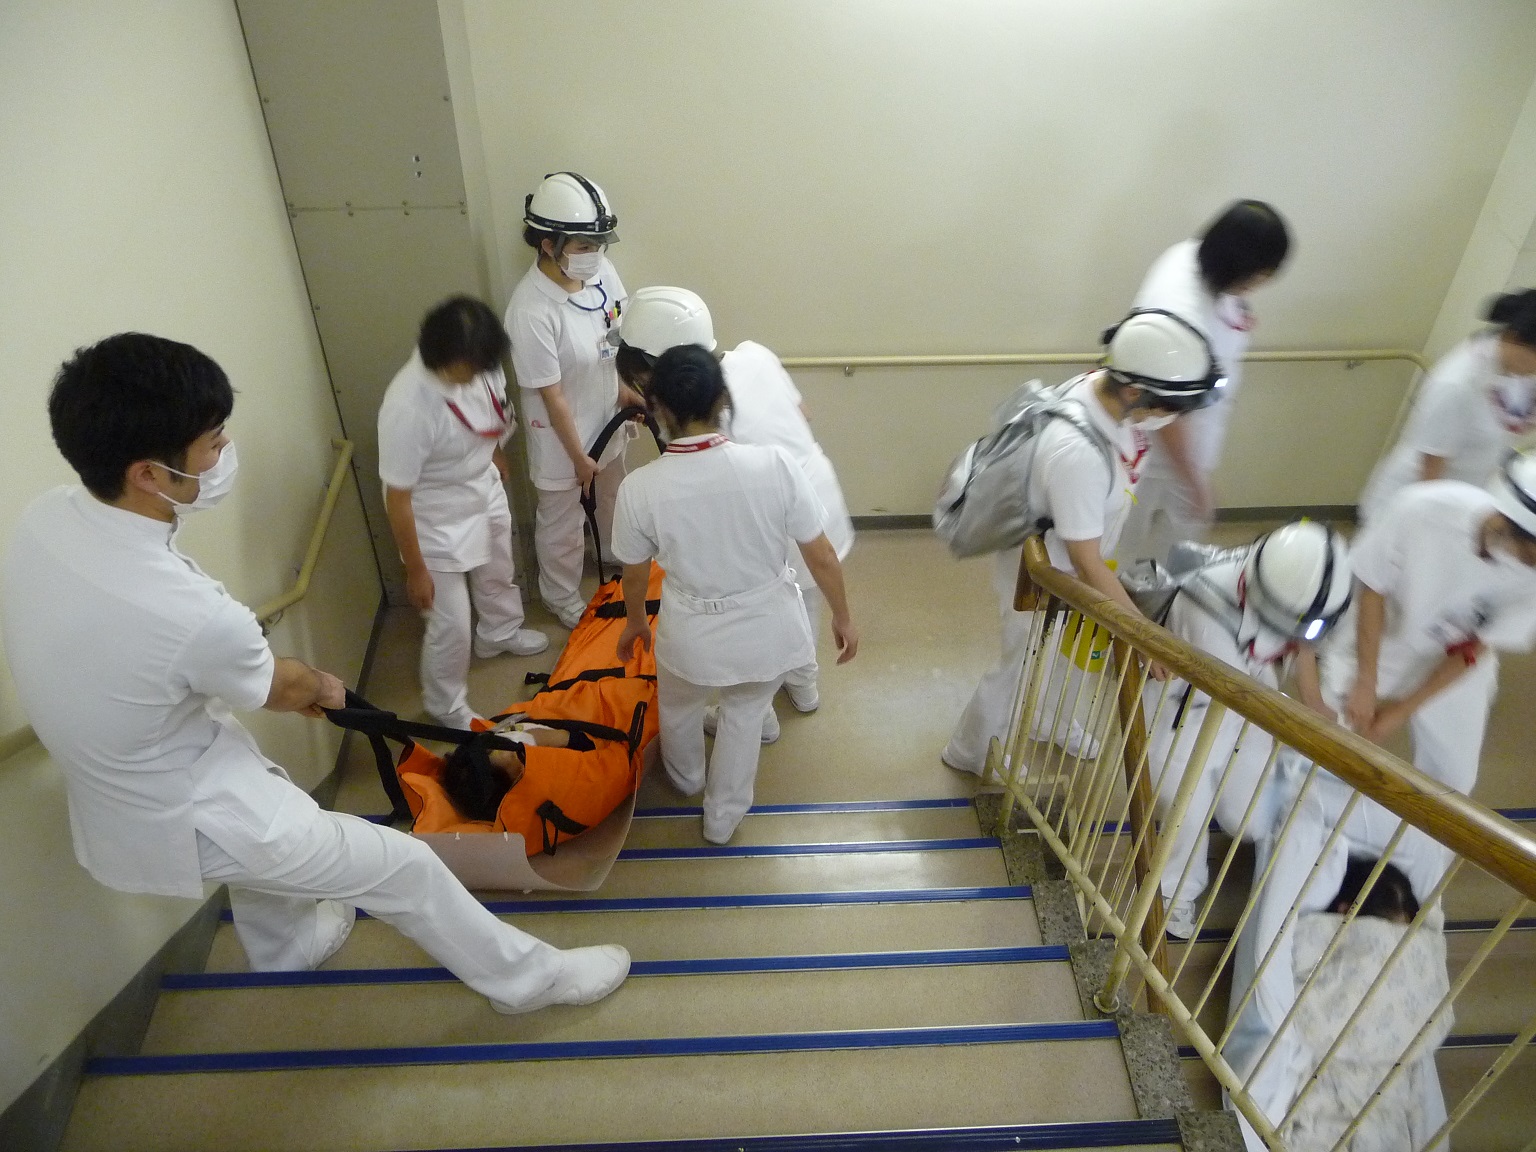 ストレッチャーを使用し階段での患者搬送